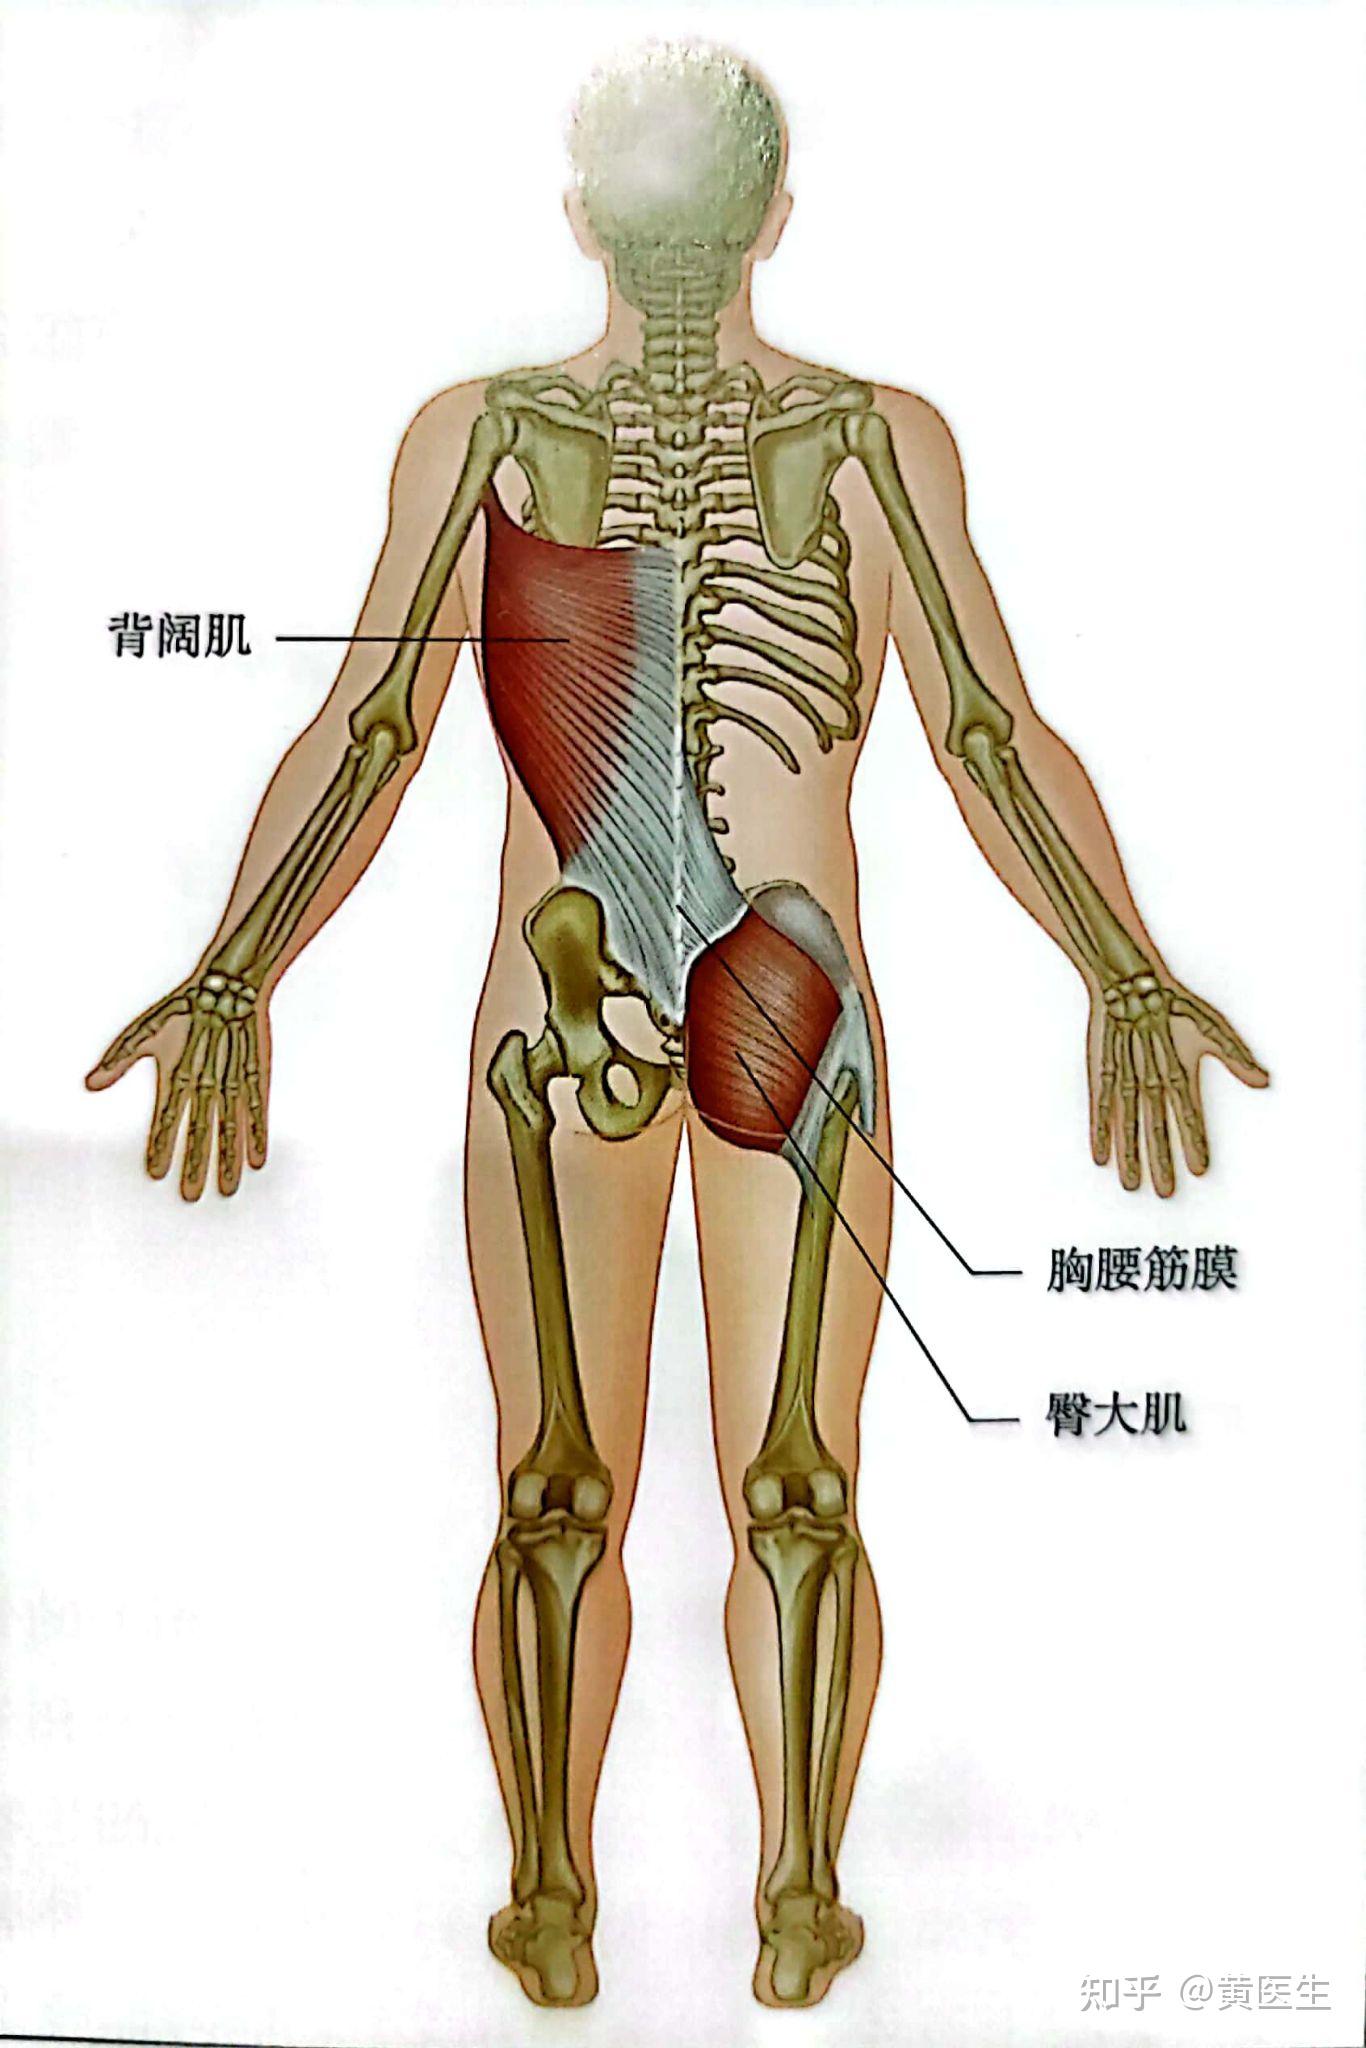 臀大肌位置图图片